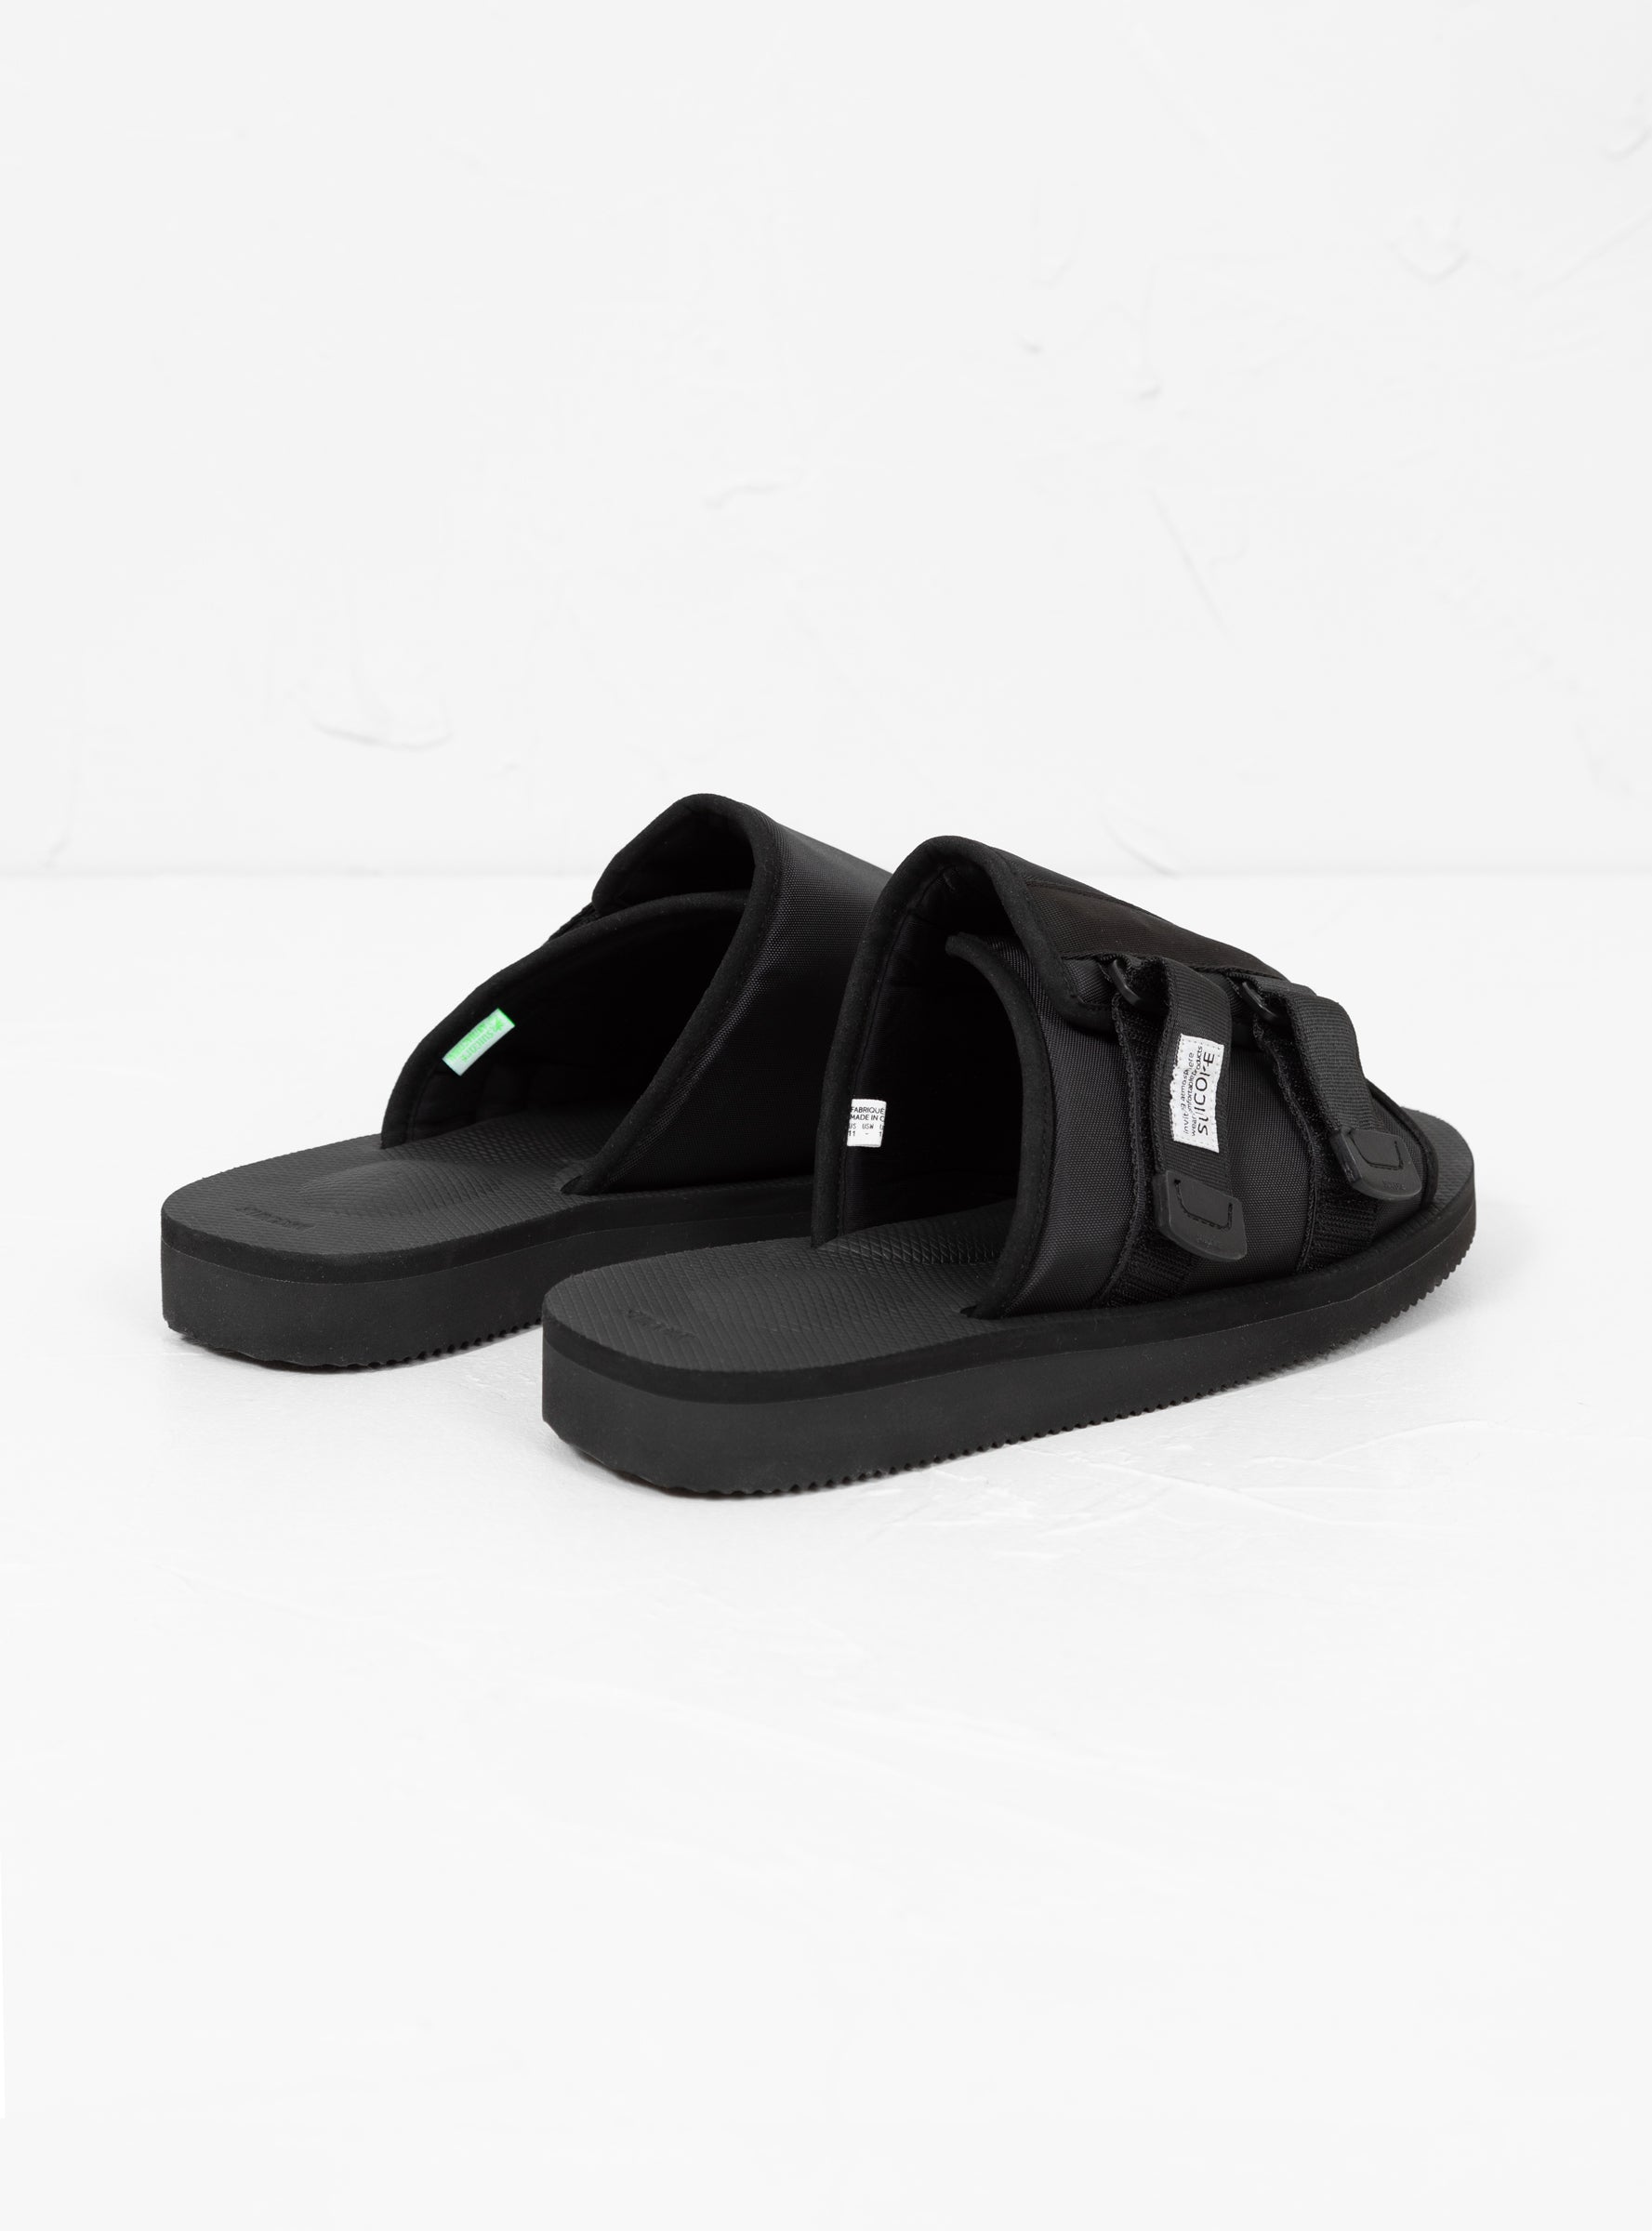 Suicoke Suicoke KAW-CAB Sandals Black - Size: UK 8